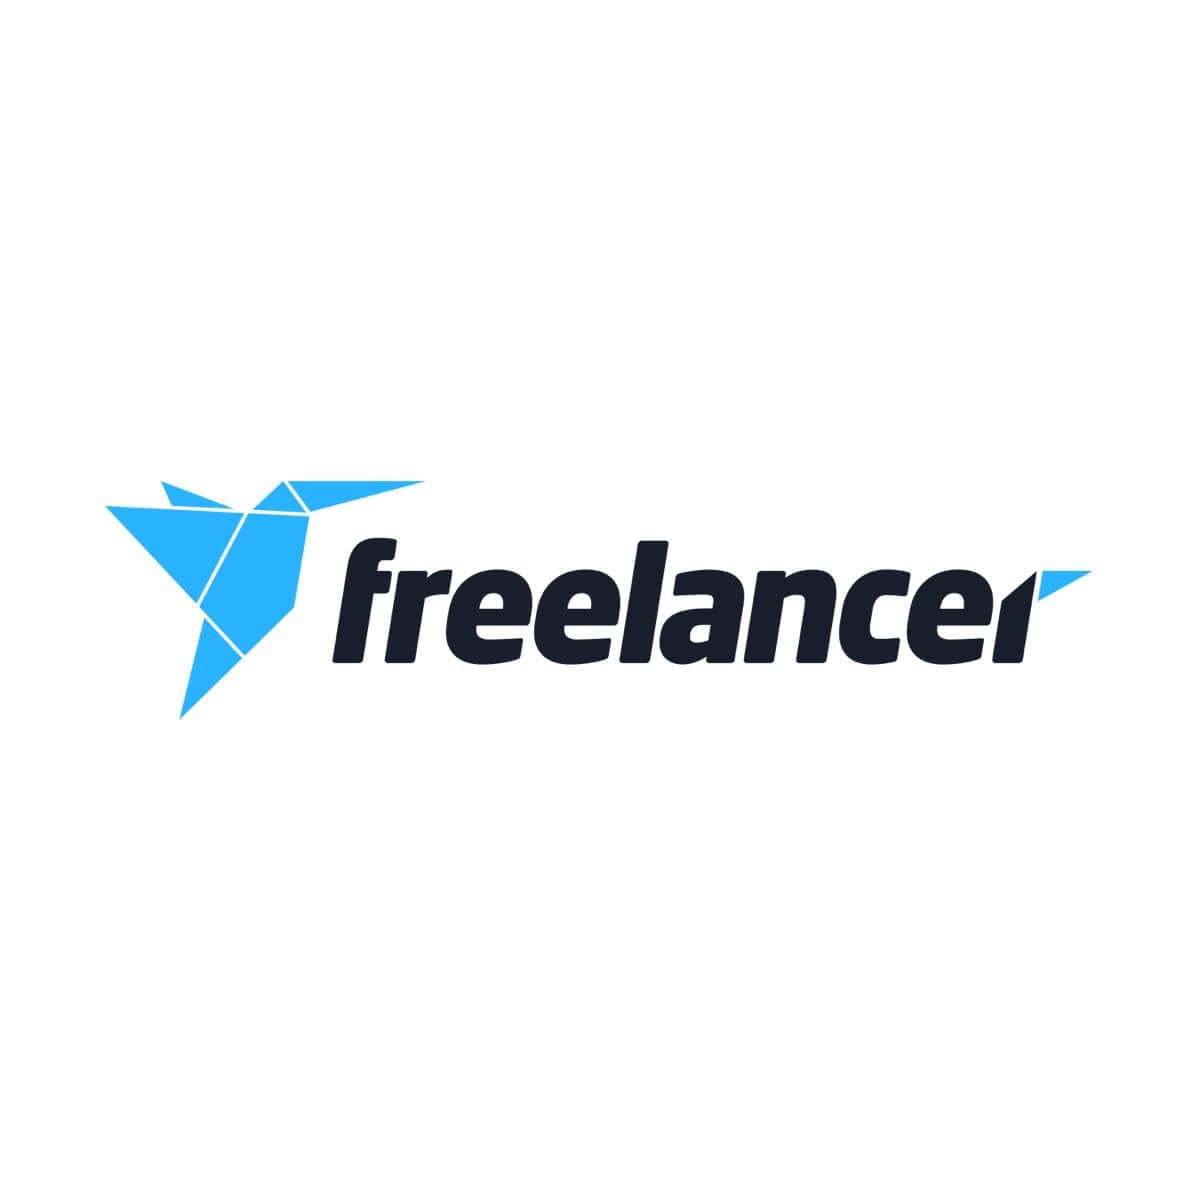 Freelancer Logo - Logo Design Jobs for February 2019